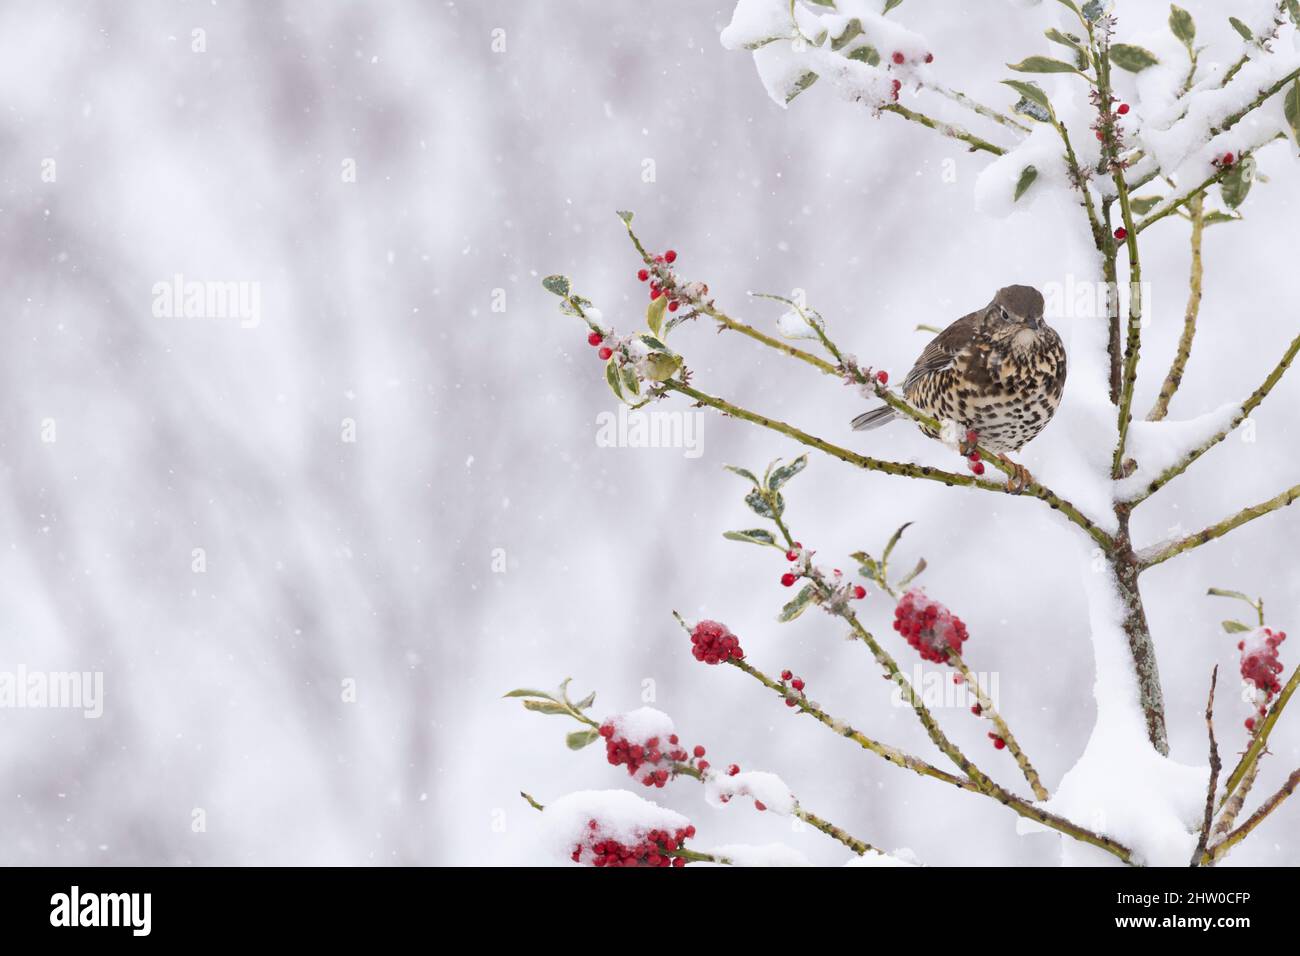 Un Thrush di Mistle (Turdus Viscivorus) che ripara da un Blizzard in un albero agrifoglio coperto di neve (Ilex aquifolium) coperto di frutti rossi Foto Stock